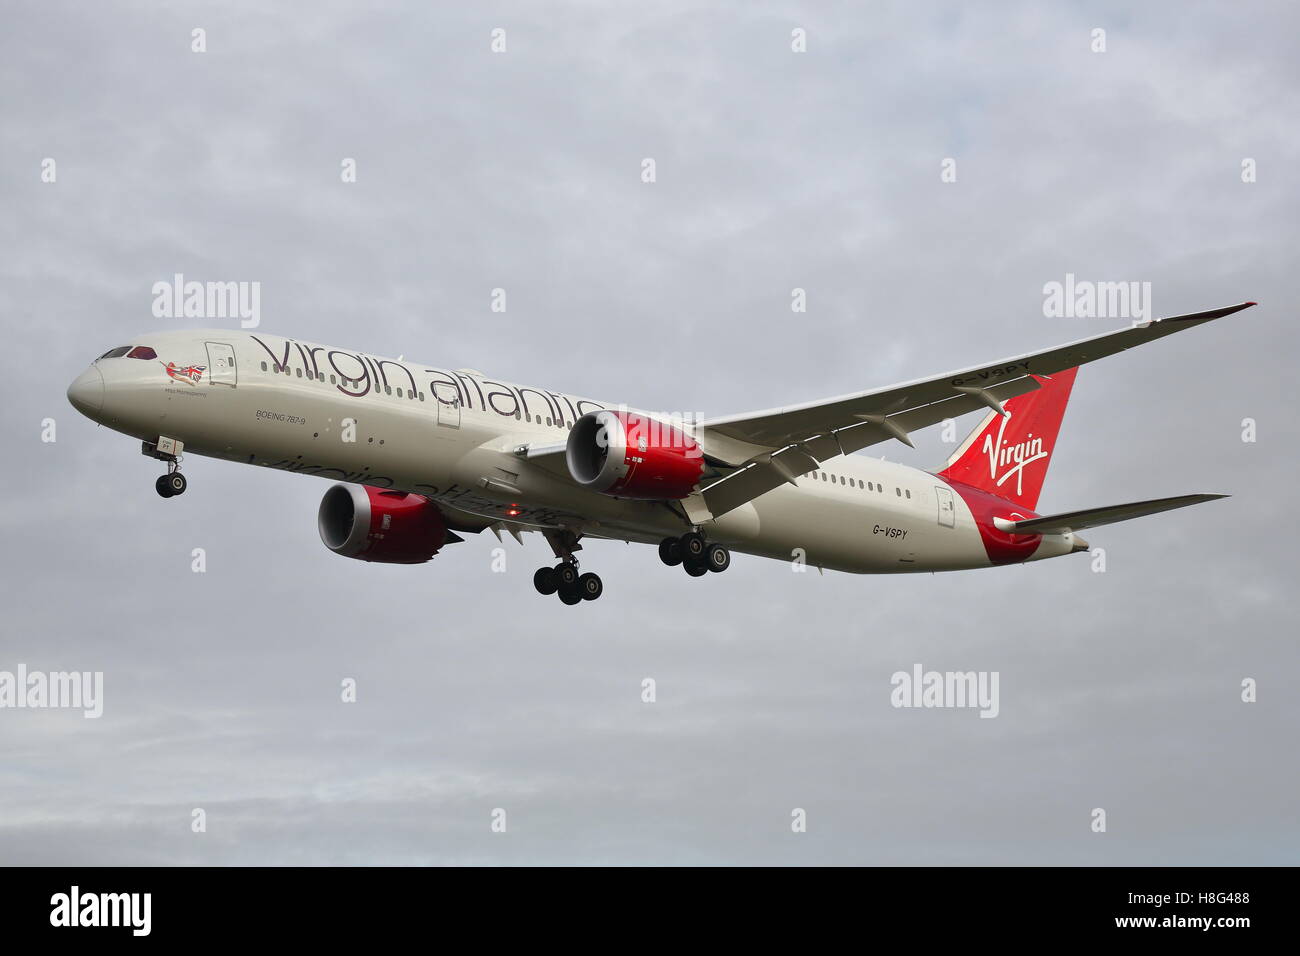 Virgin Atlantic Boeing 787-9 Dreamliner G-VSPY arrivant à l'aéroport Heathrow de Londres, UK Banque D'Images